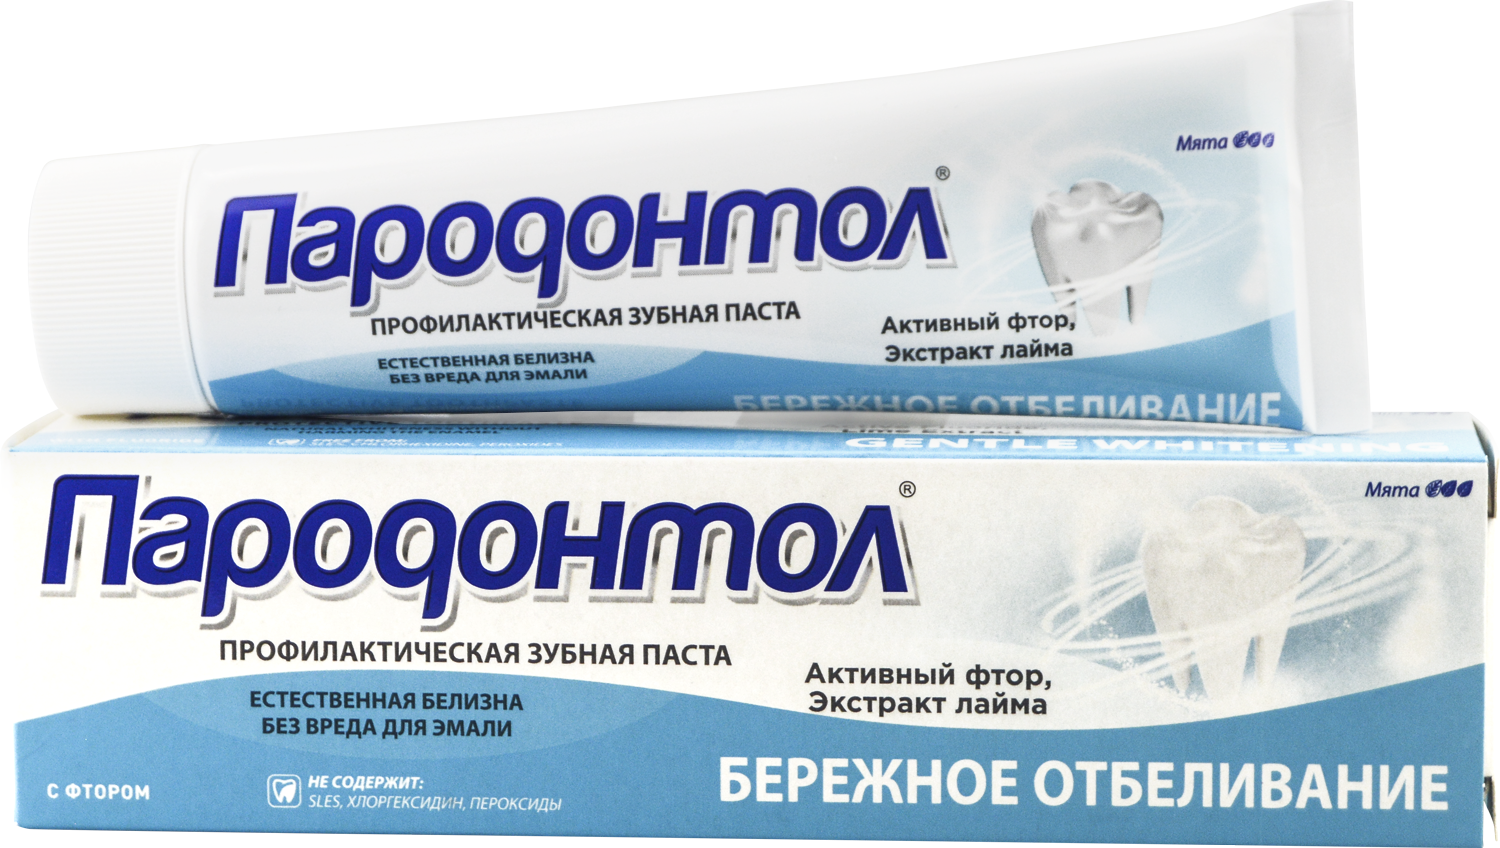 Зубная паста "Пародонтол" ("Parodontol") Бережное отбеливание  124 гр.